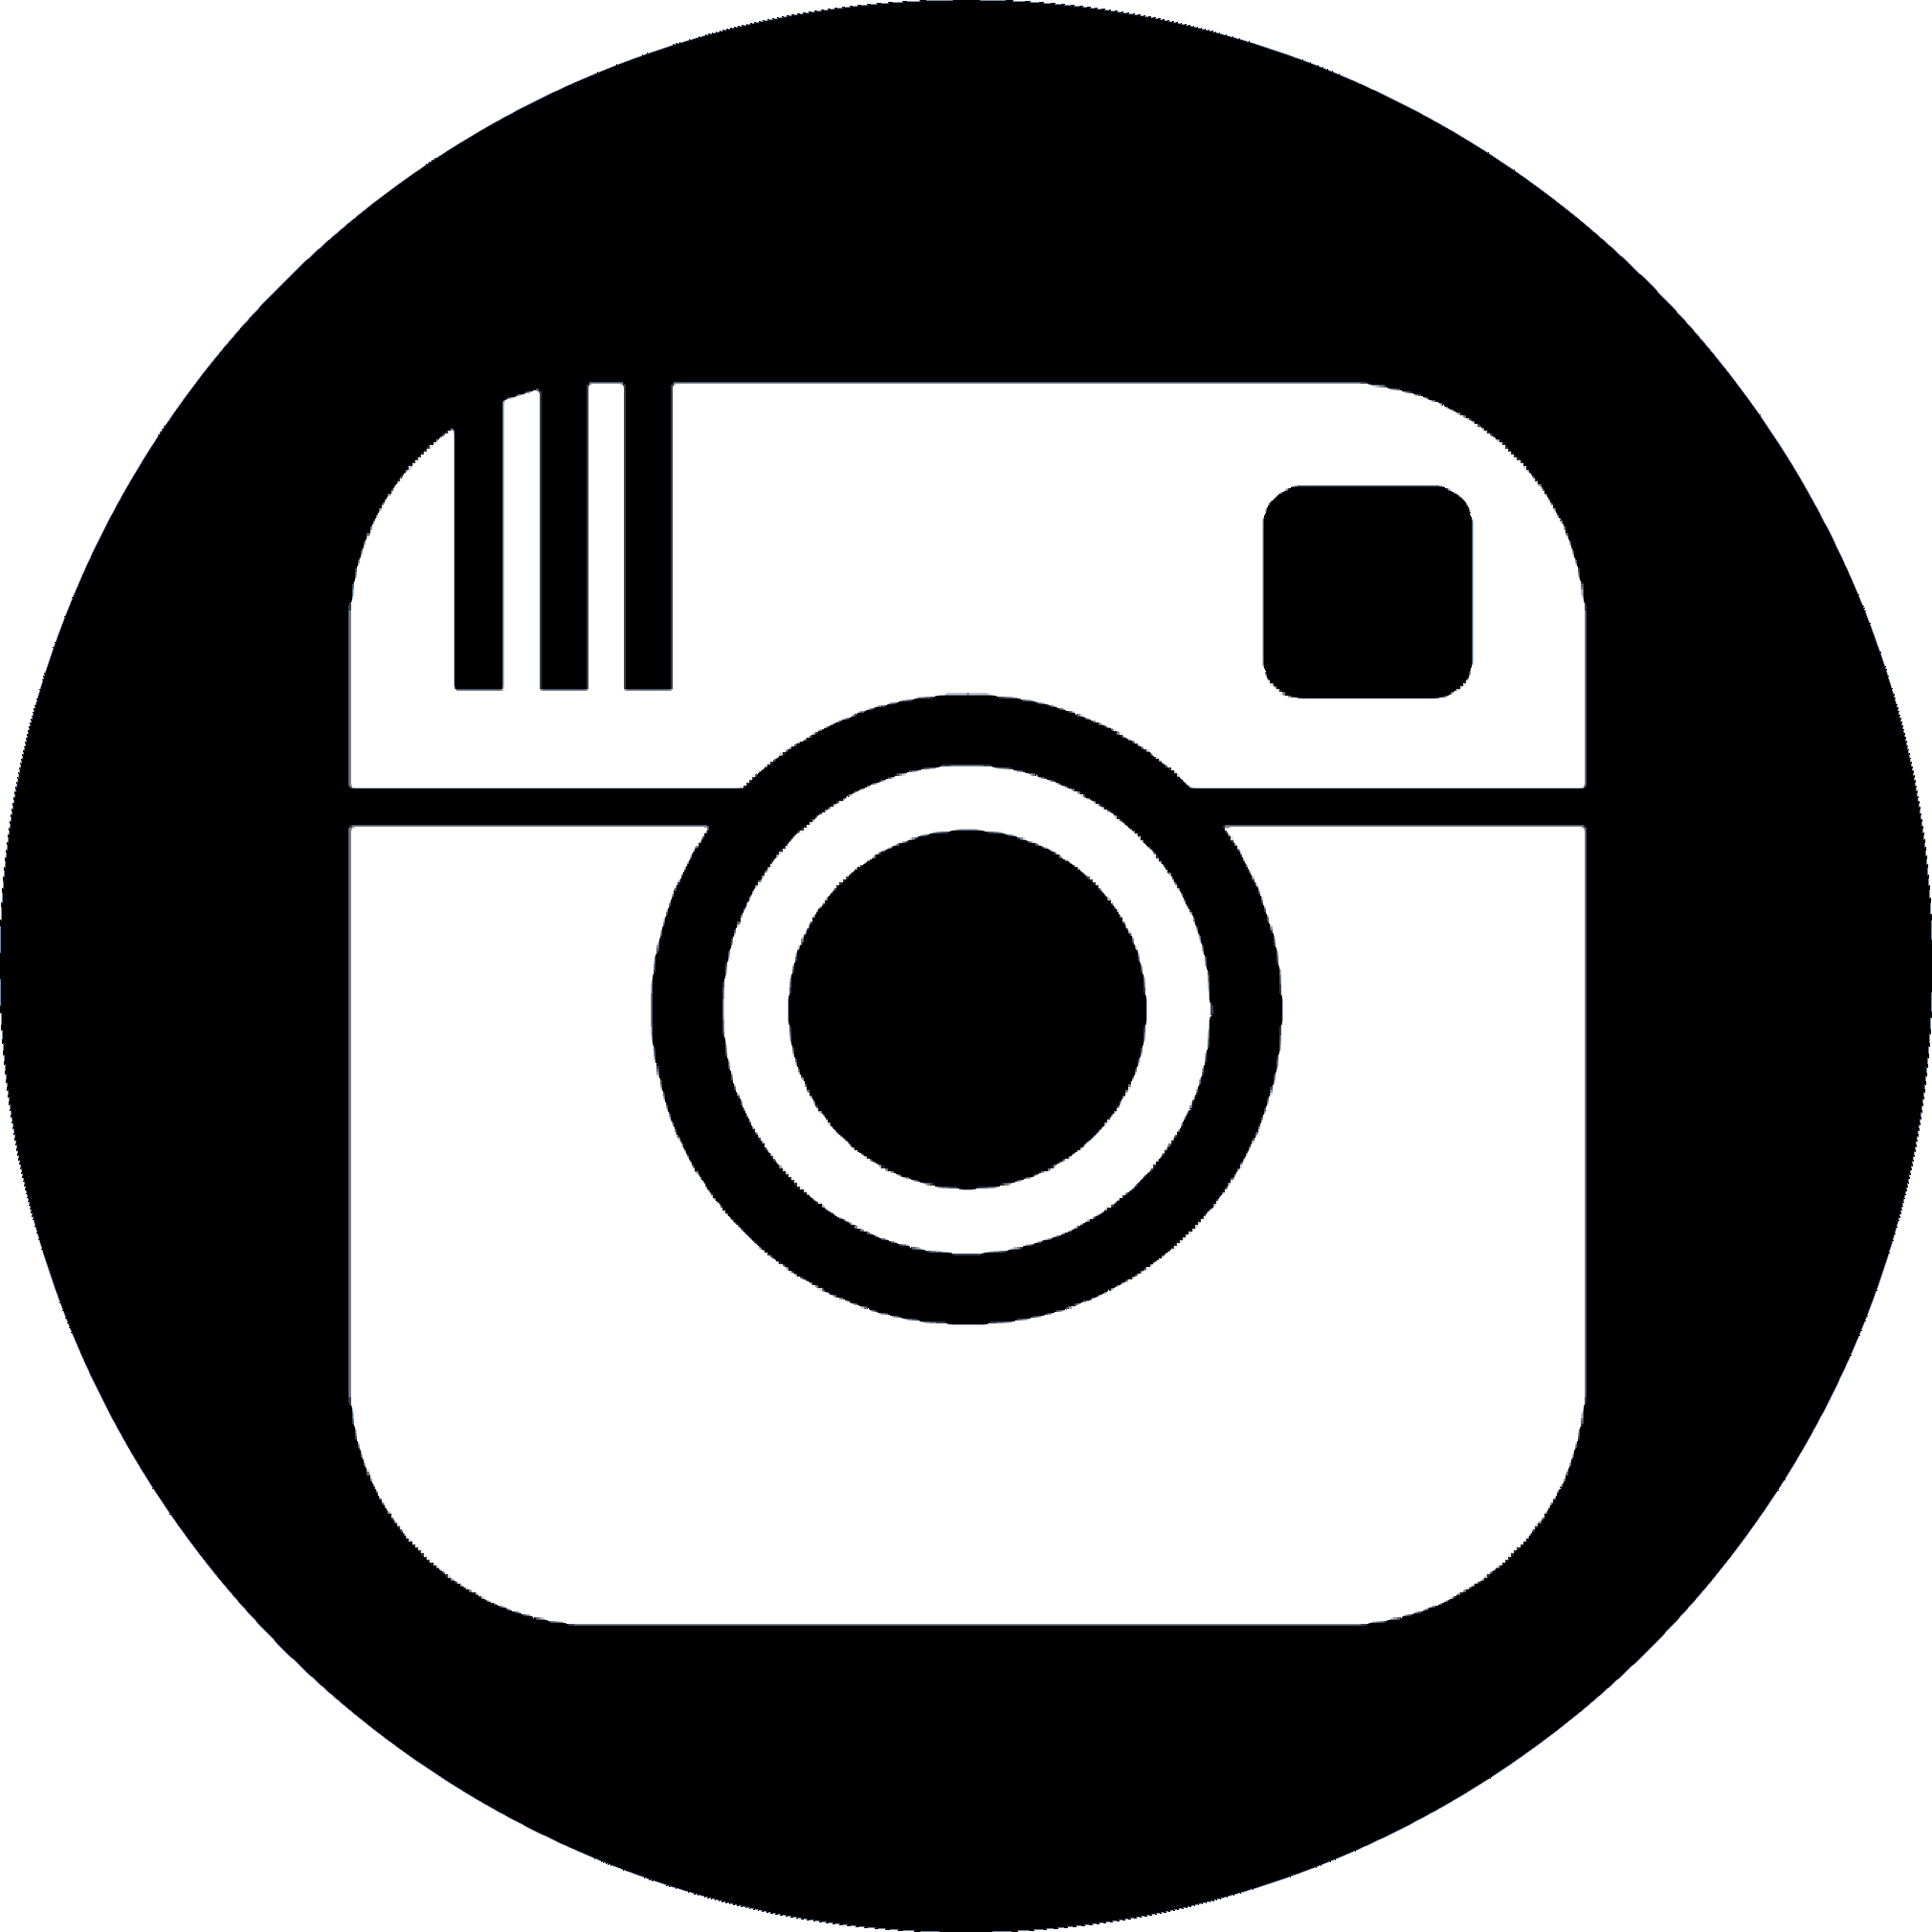 Logo Instagram Png Fond Noir Amashusho Images Images And Photos Finder